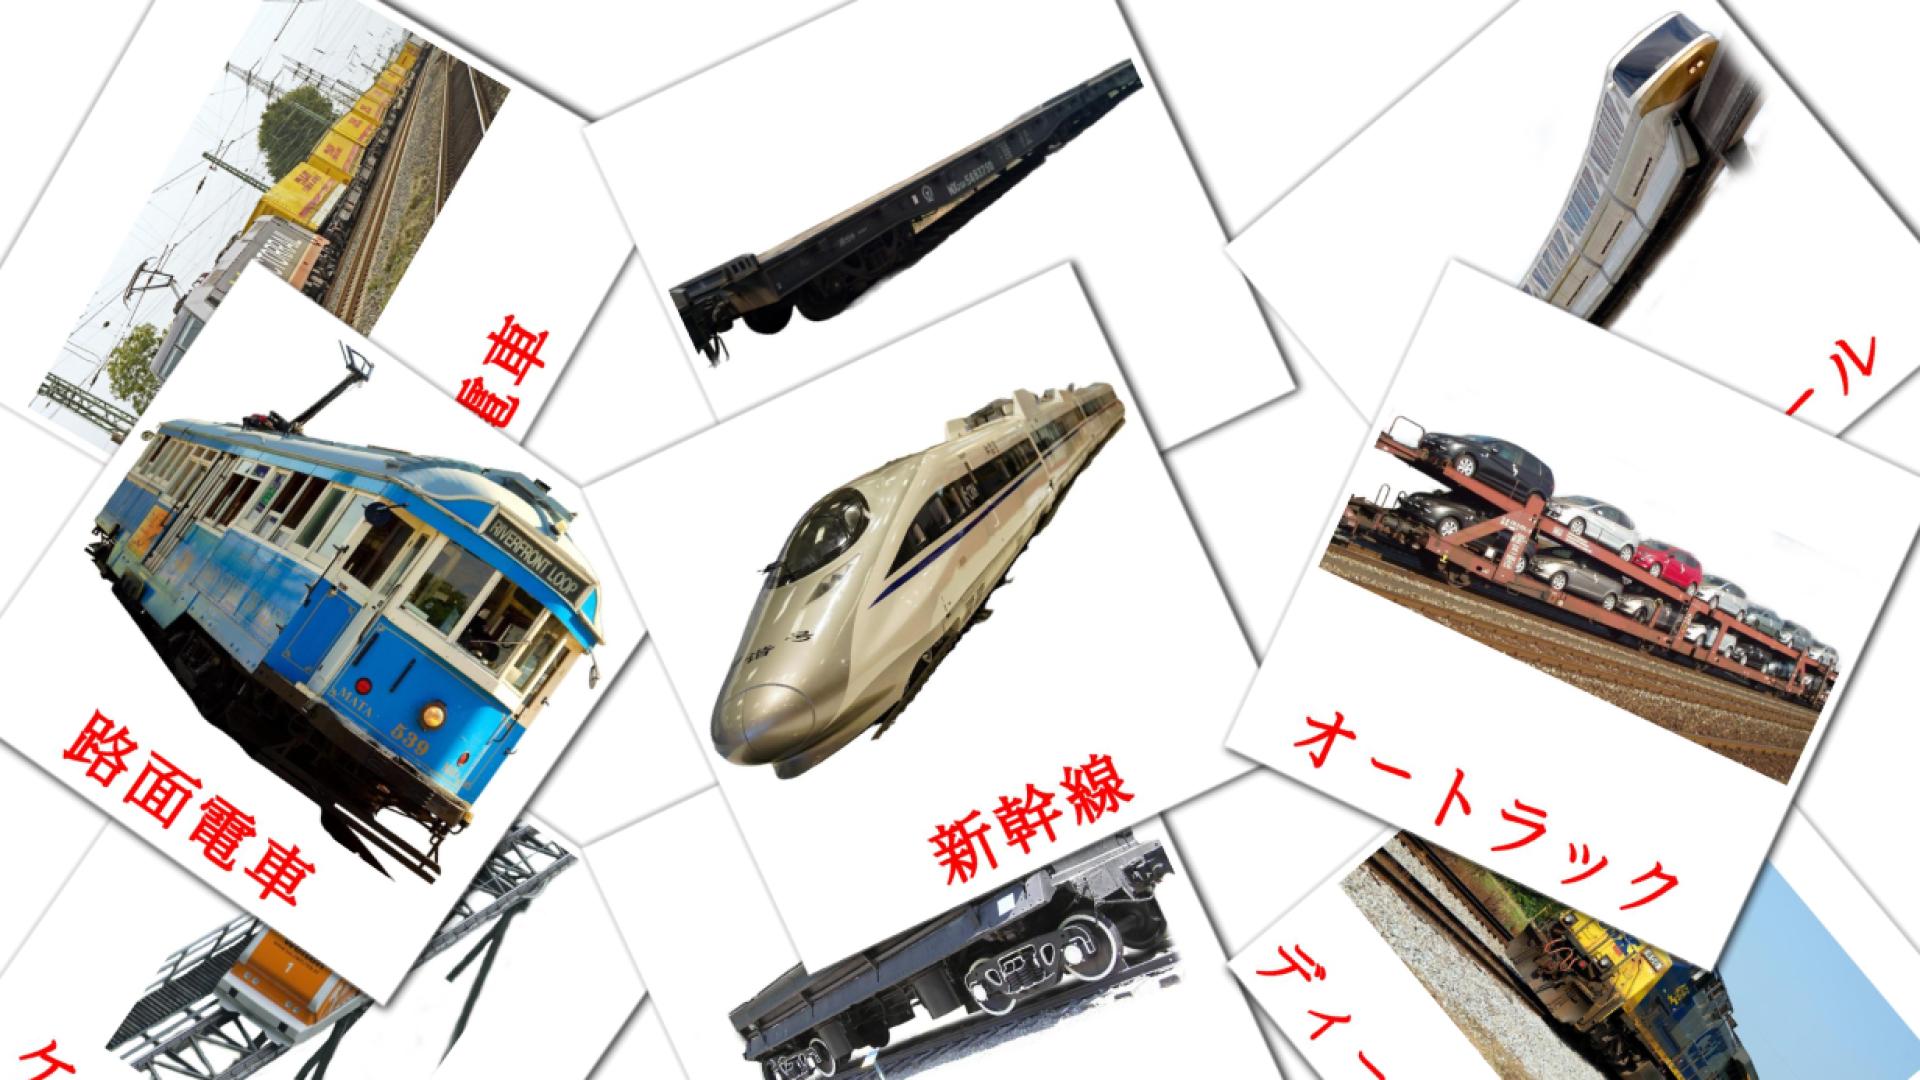 18 鉄道 flashcards